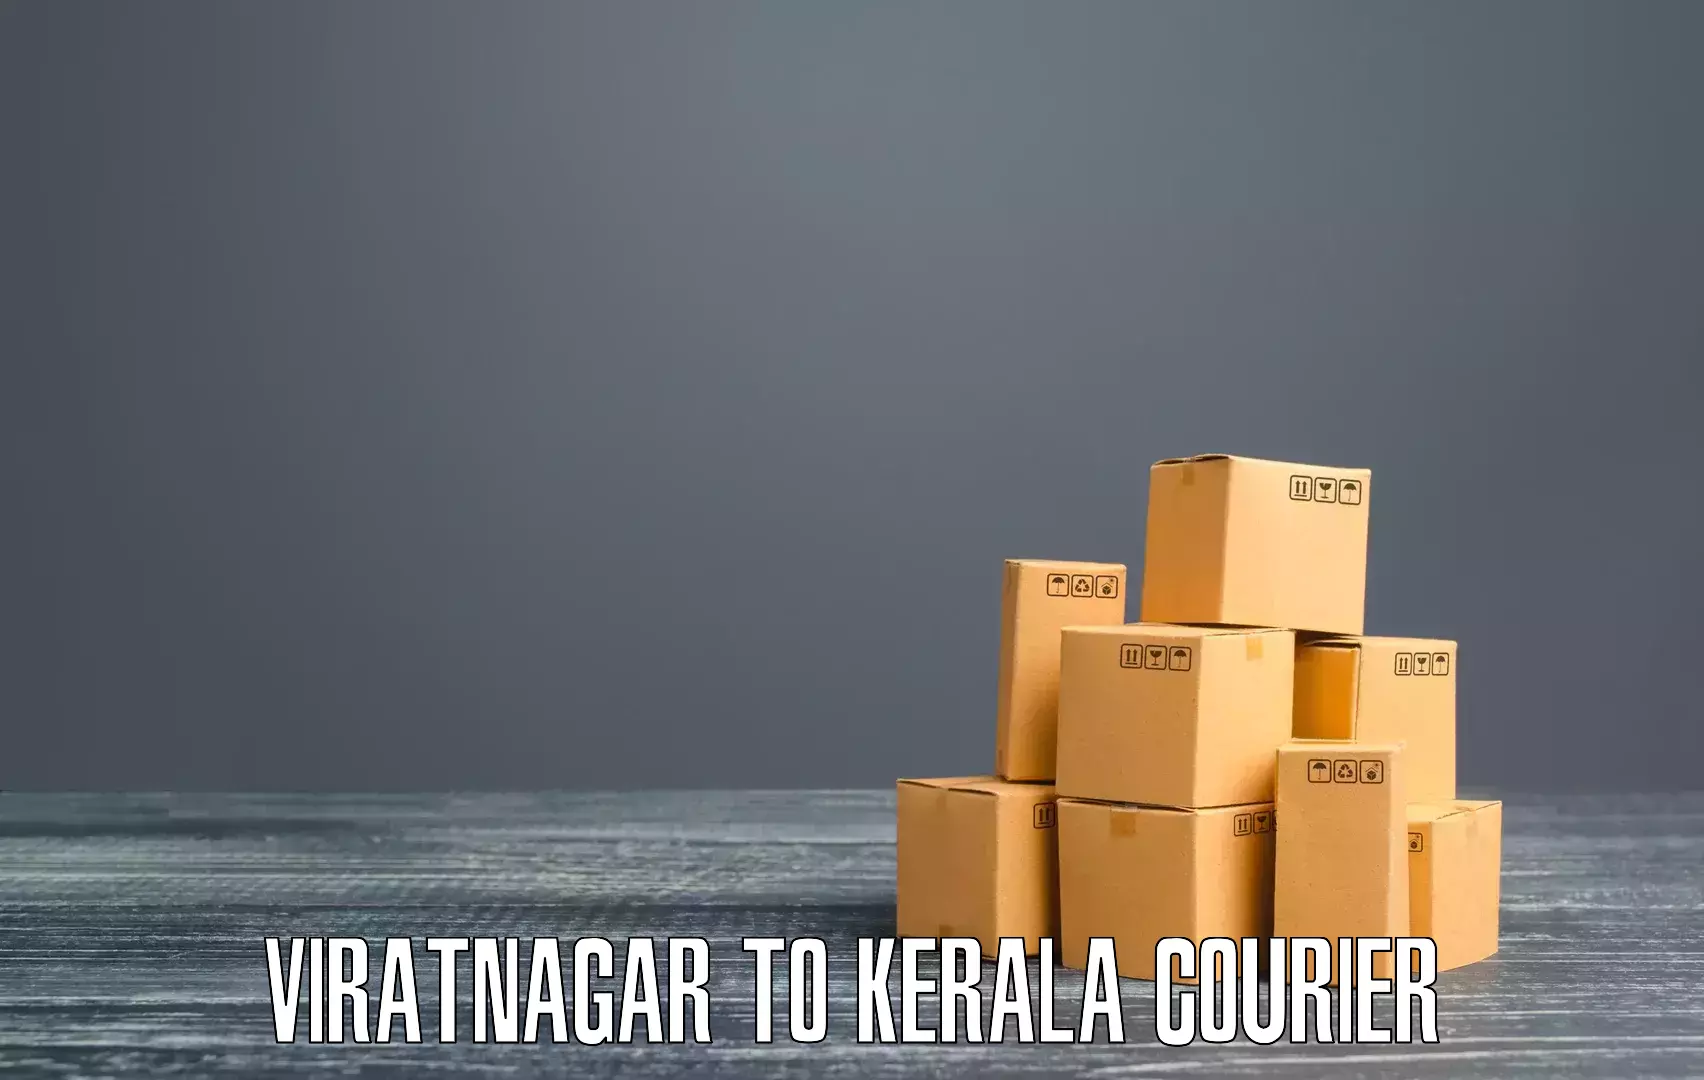 Package tracking Viratnagar to Ponekkara